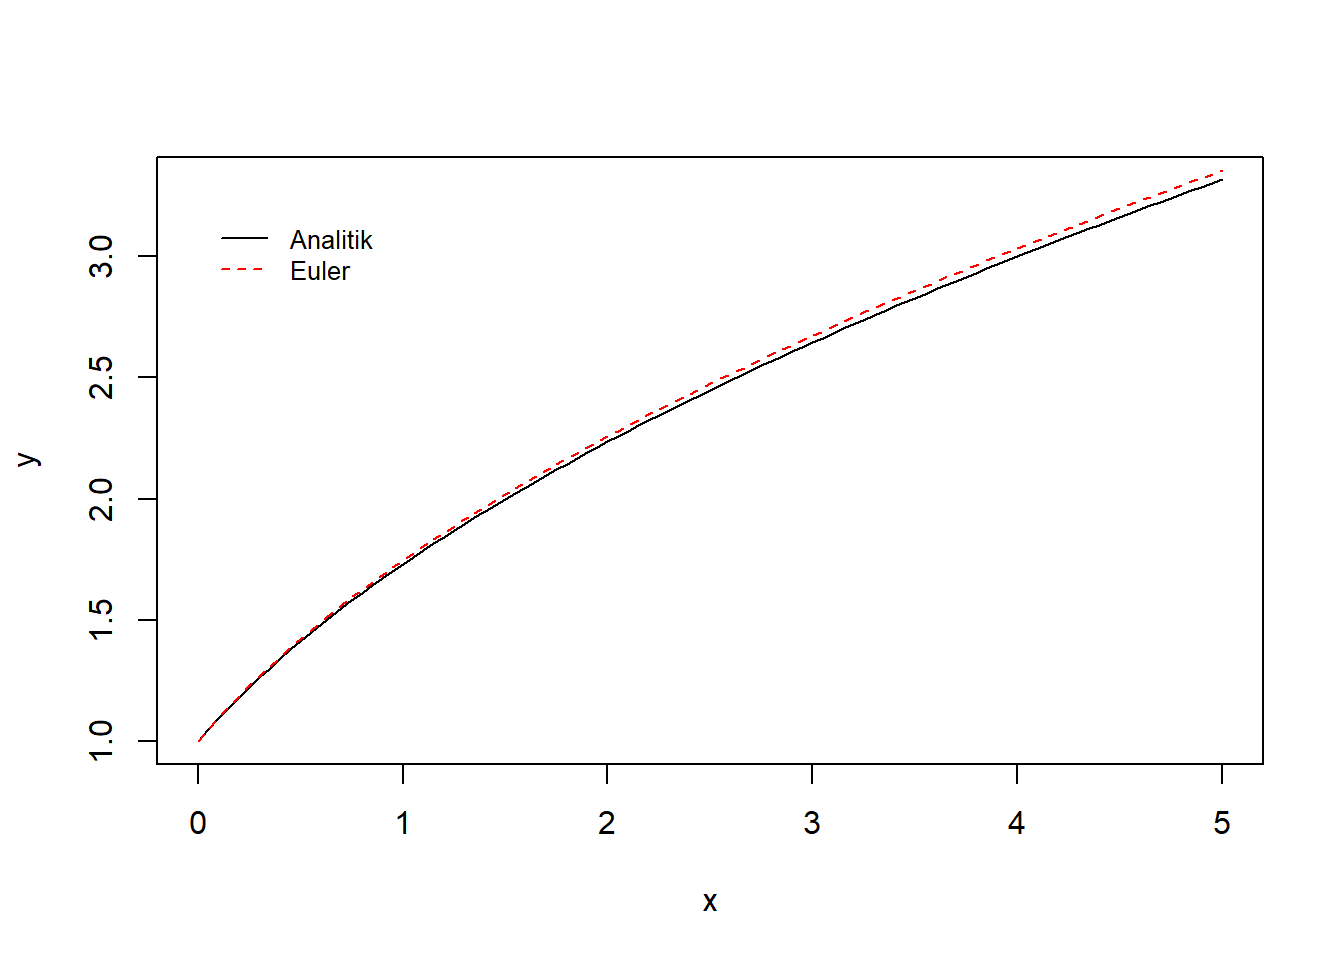 Visualisasi integrasi numerik dengan metode Euler dan metode analitik